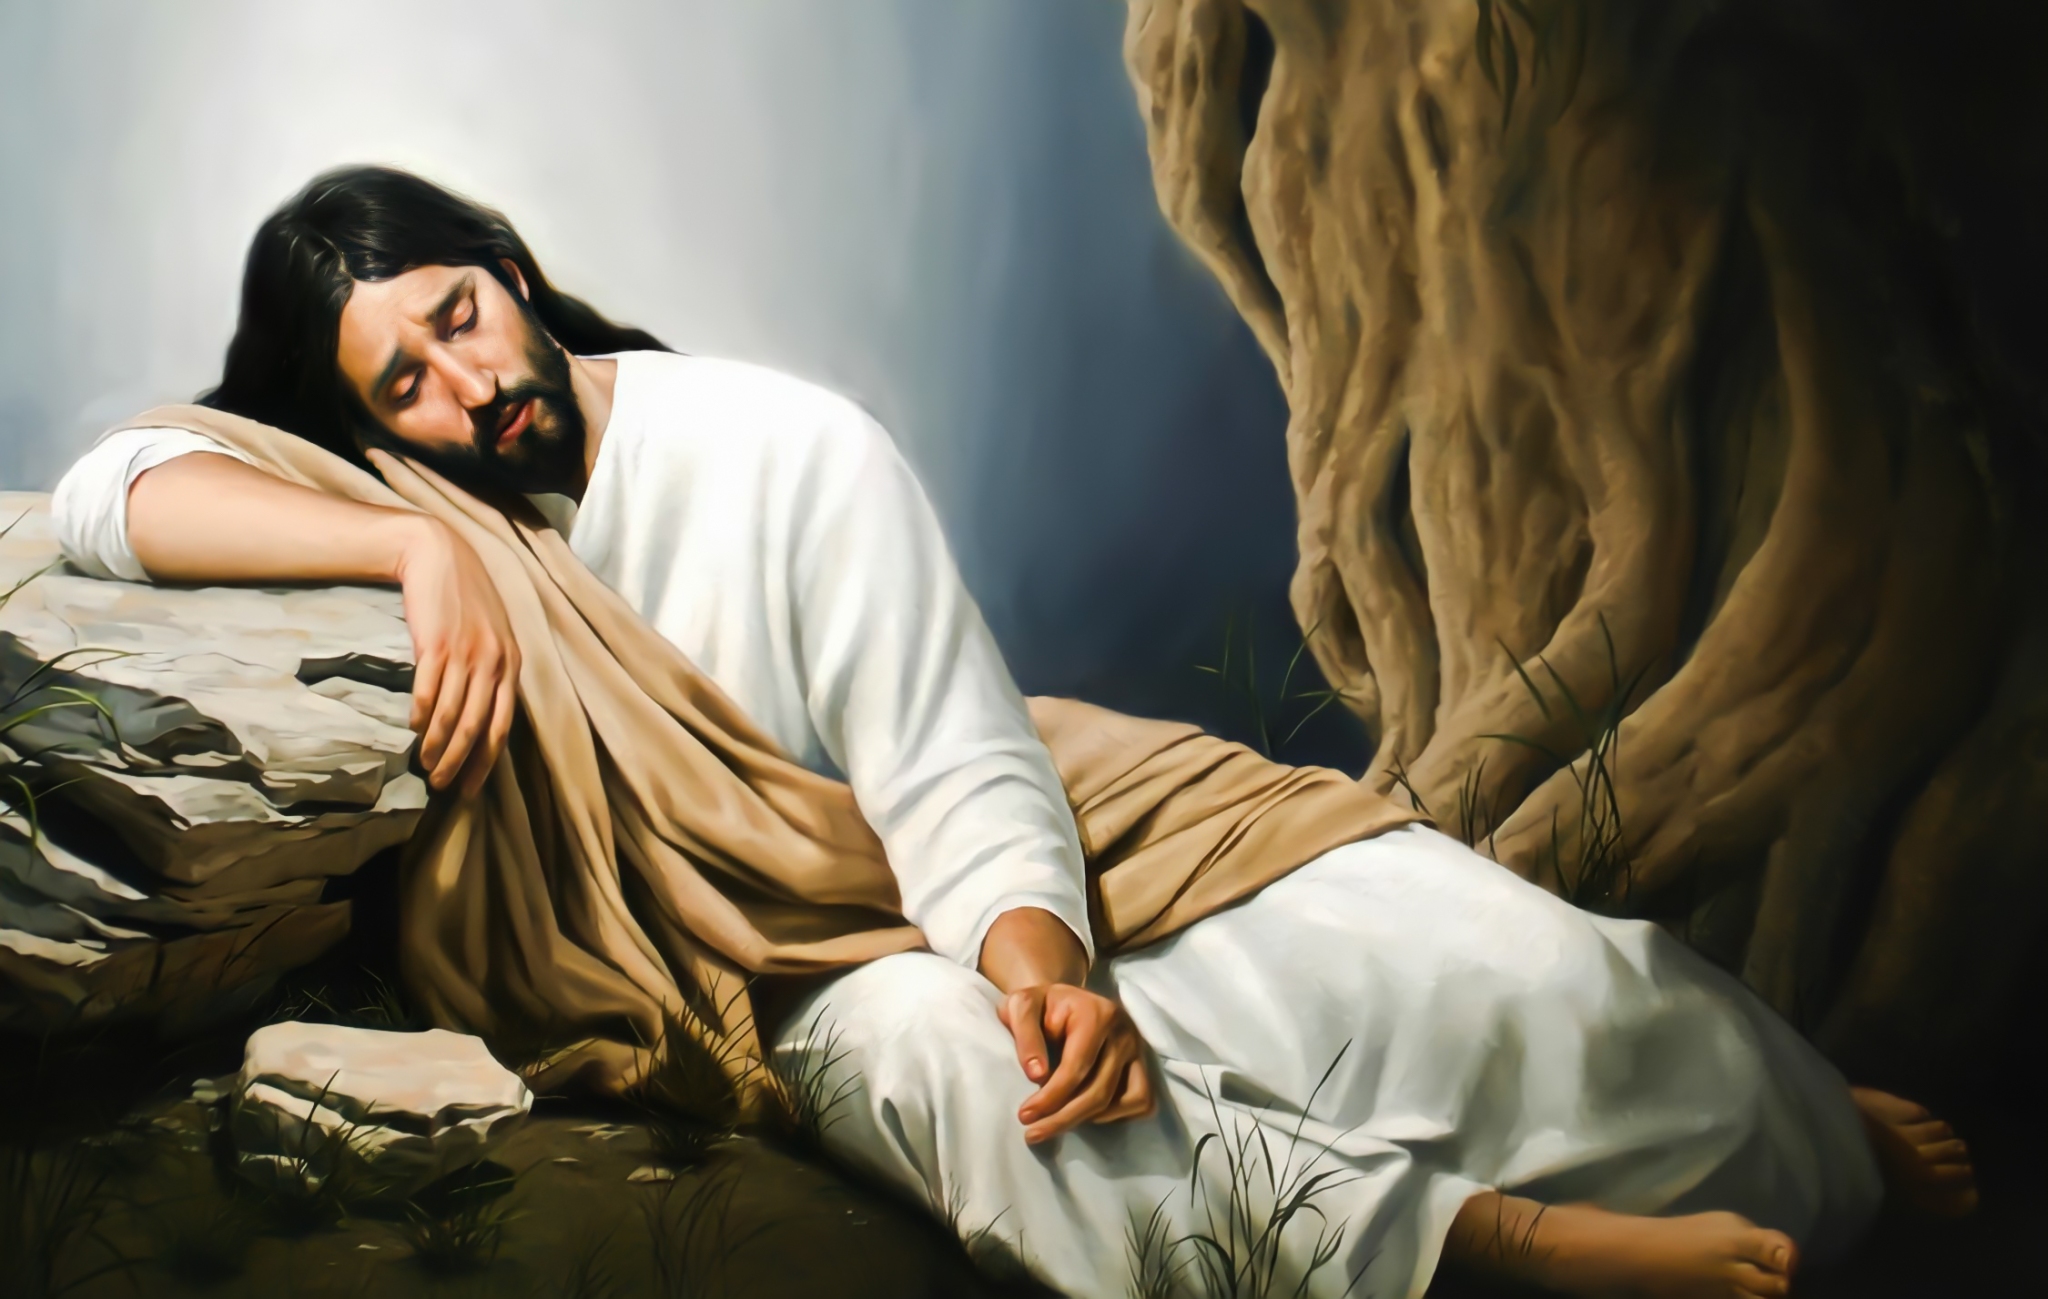 Jesus Praying In The Garden Images